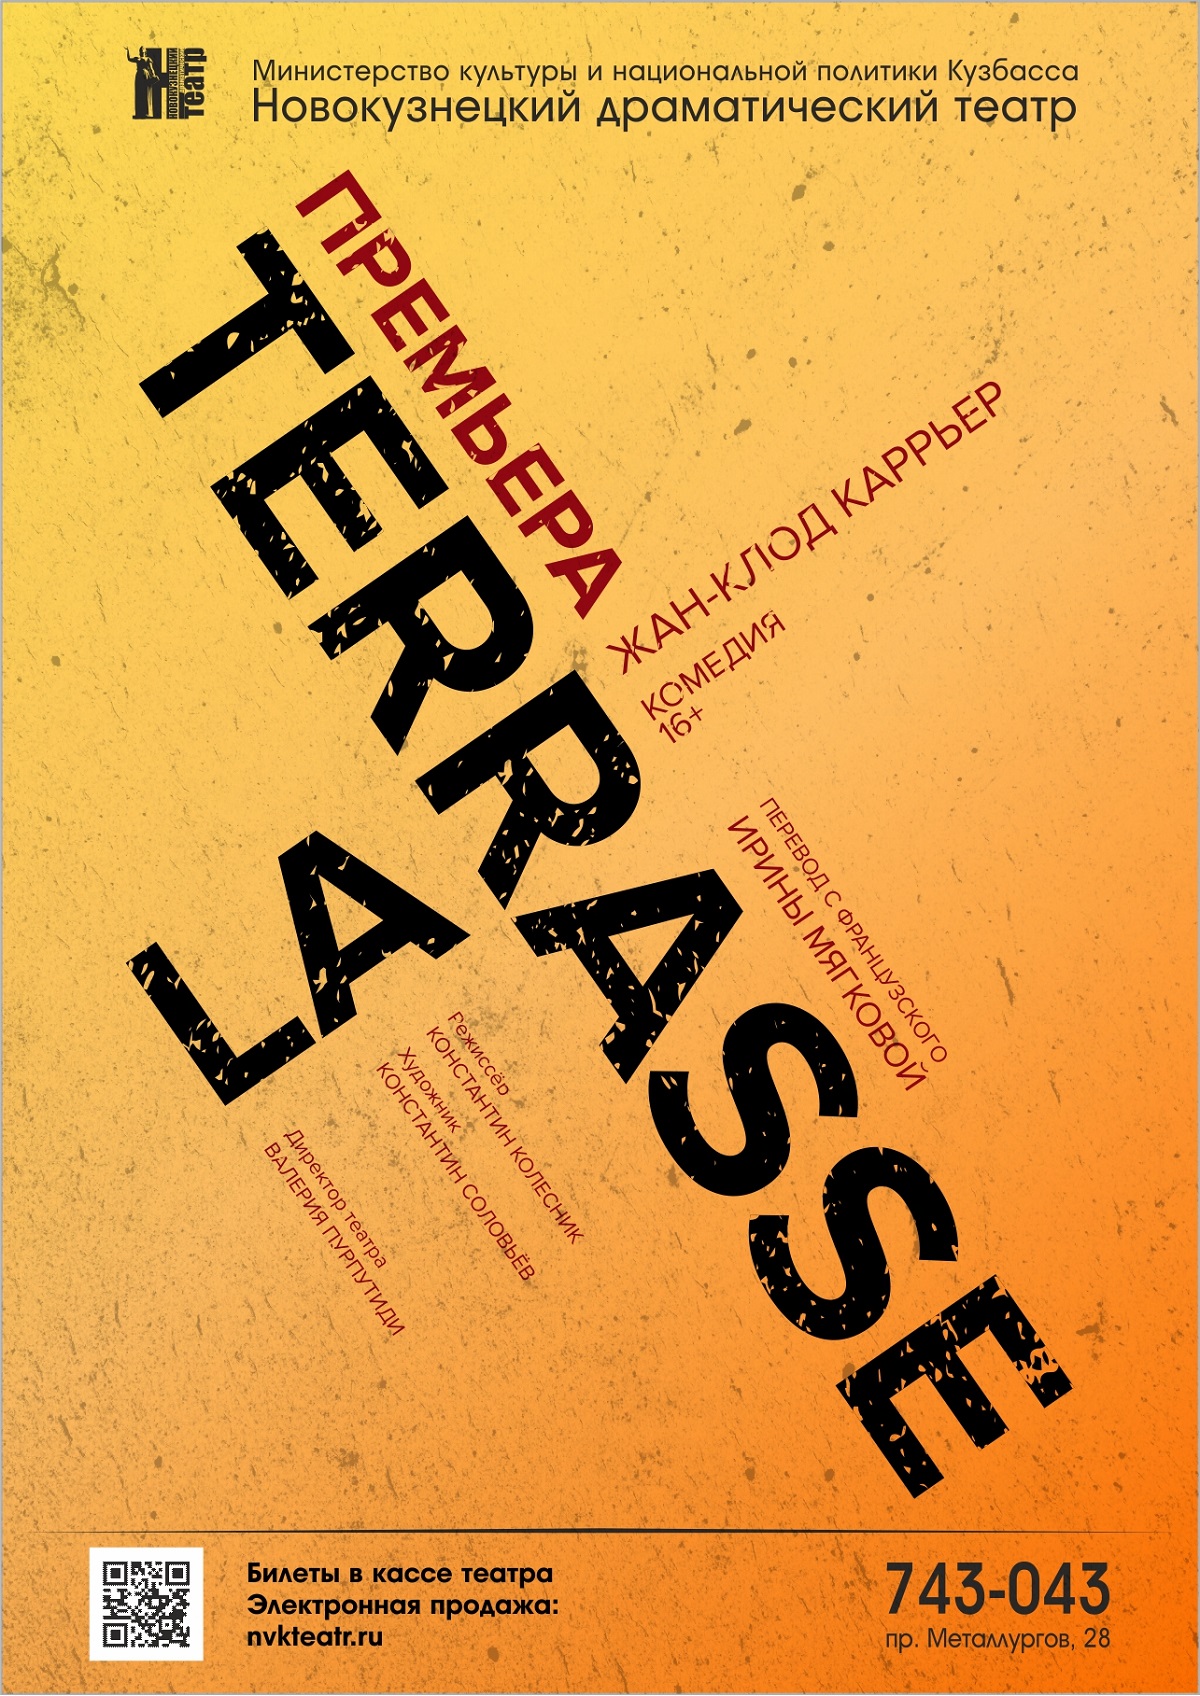 18 и 19 декабря премьера спектакля «La Terrasse» в Новокузнецком драматическом театре